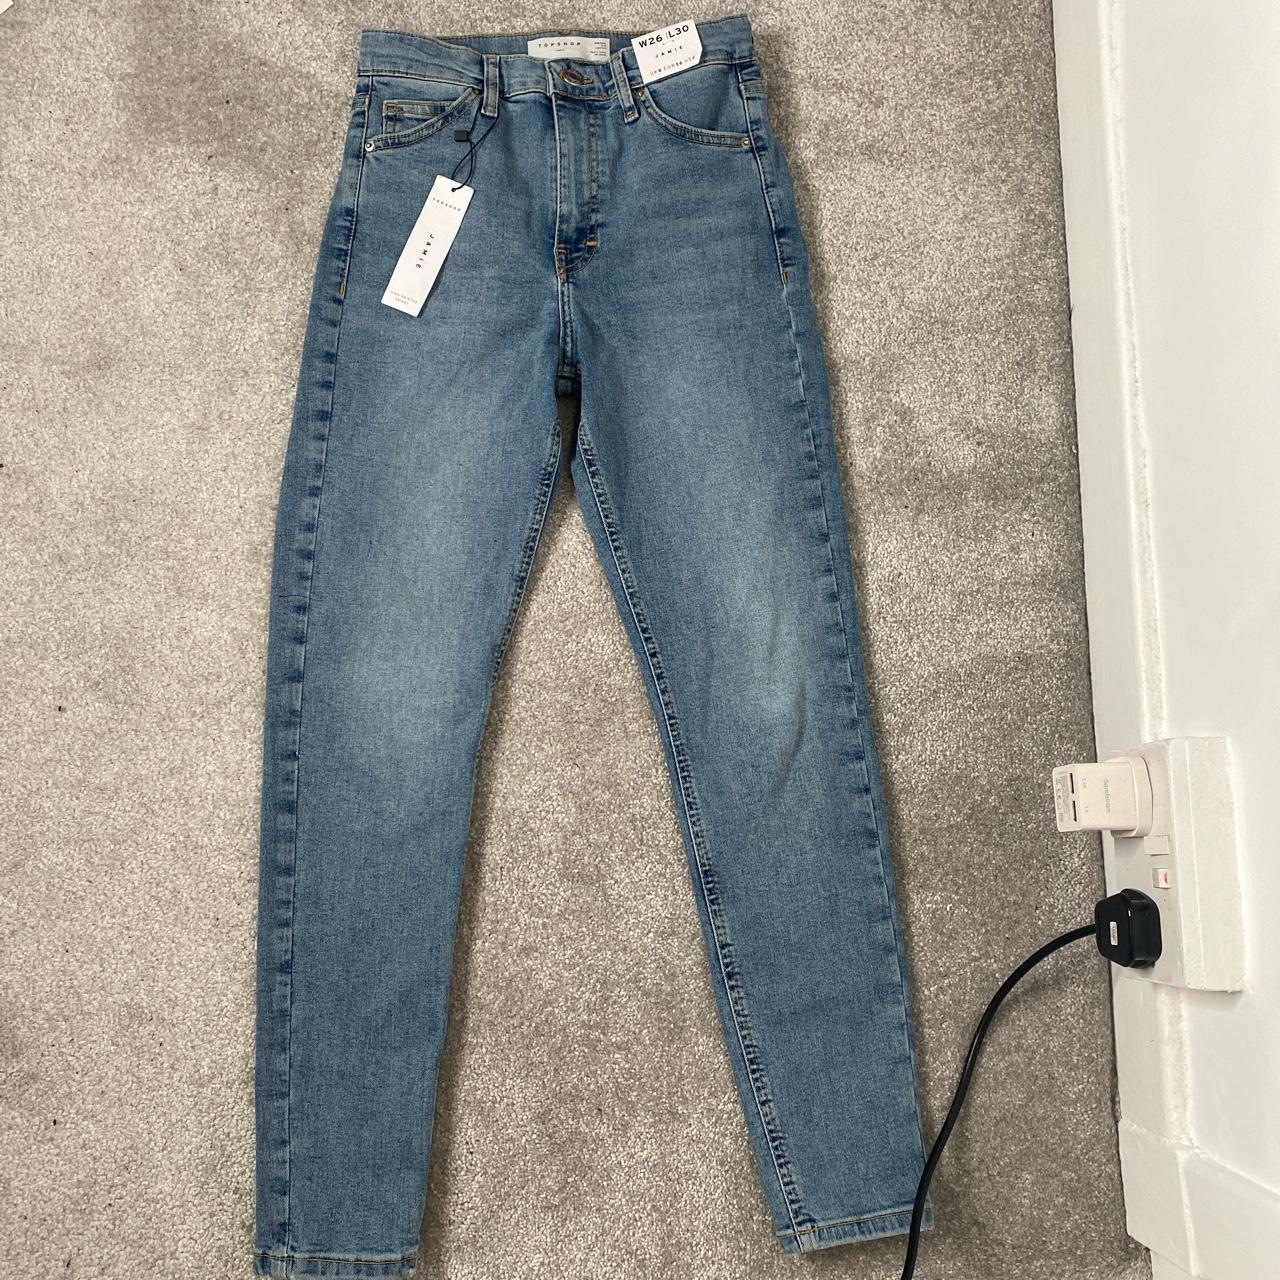 Topshop light blue Jamie jeans W26 L30 would fit a... - Depop